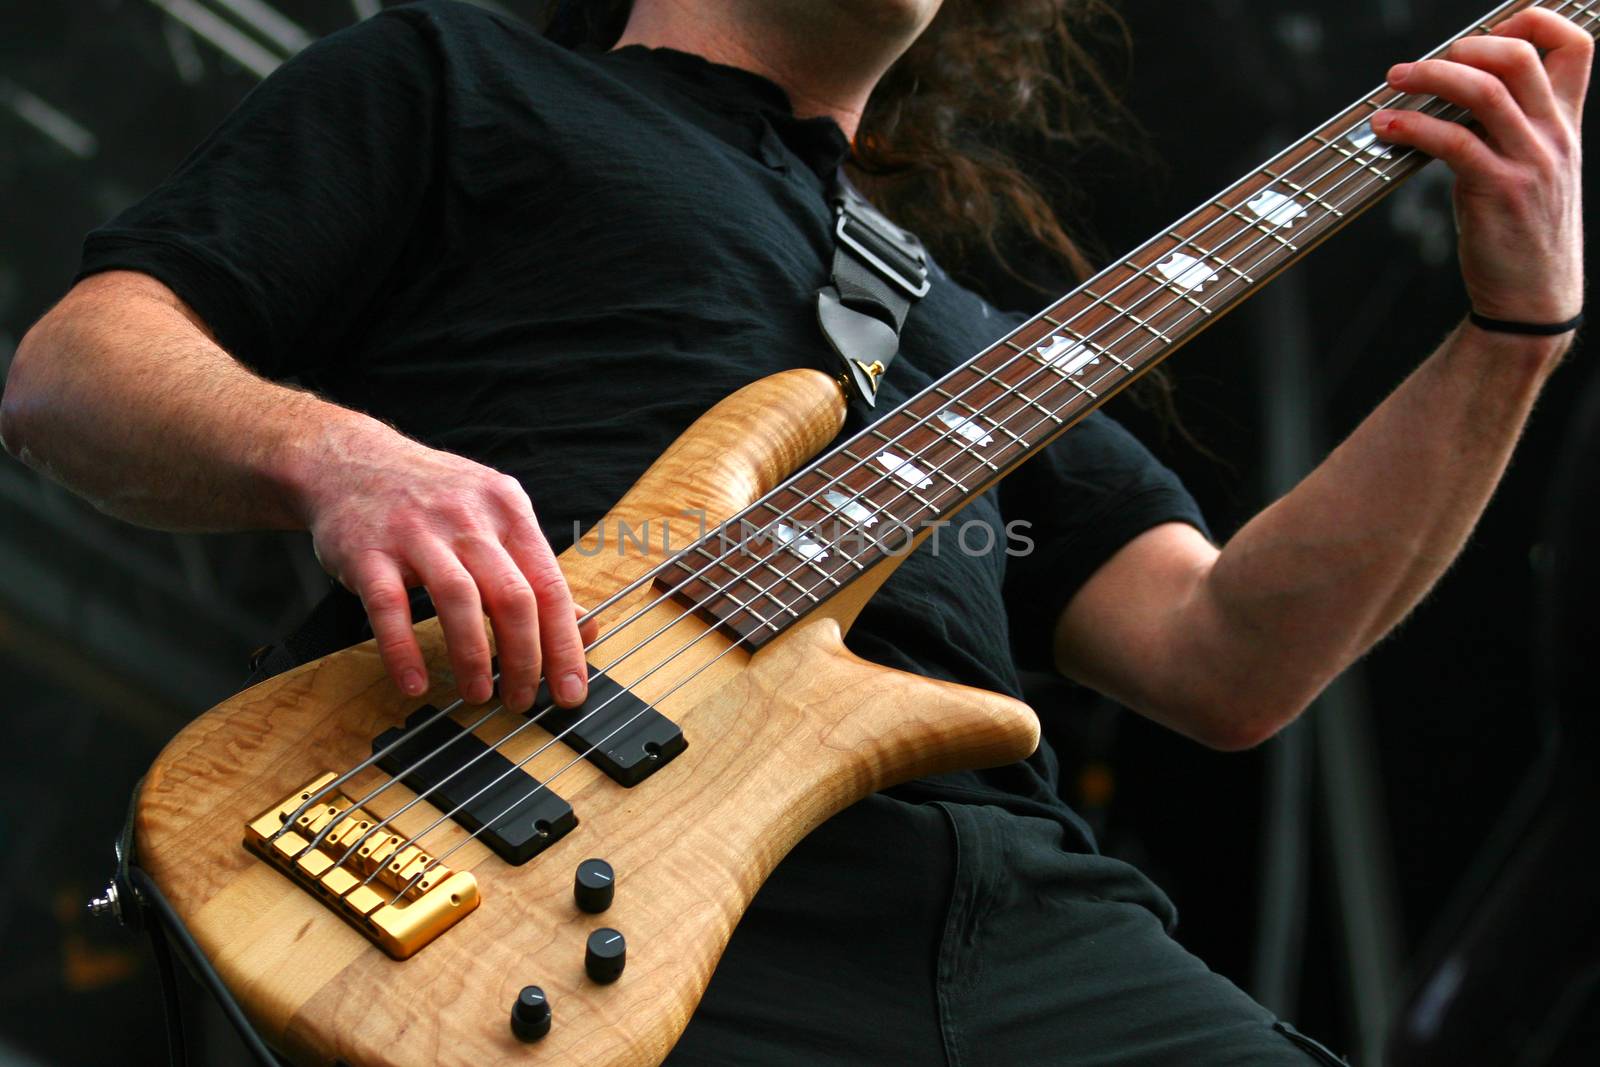 Guitarist in action